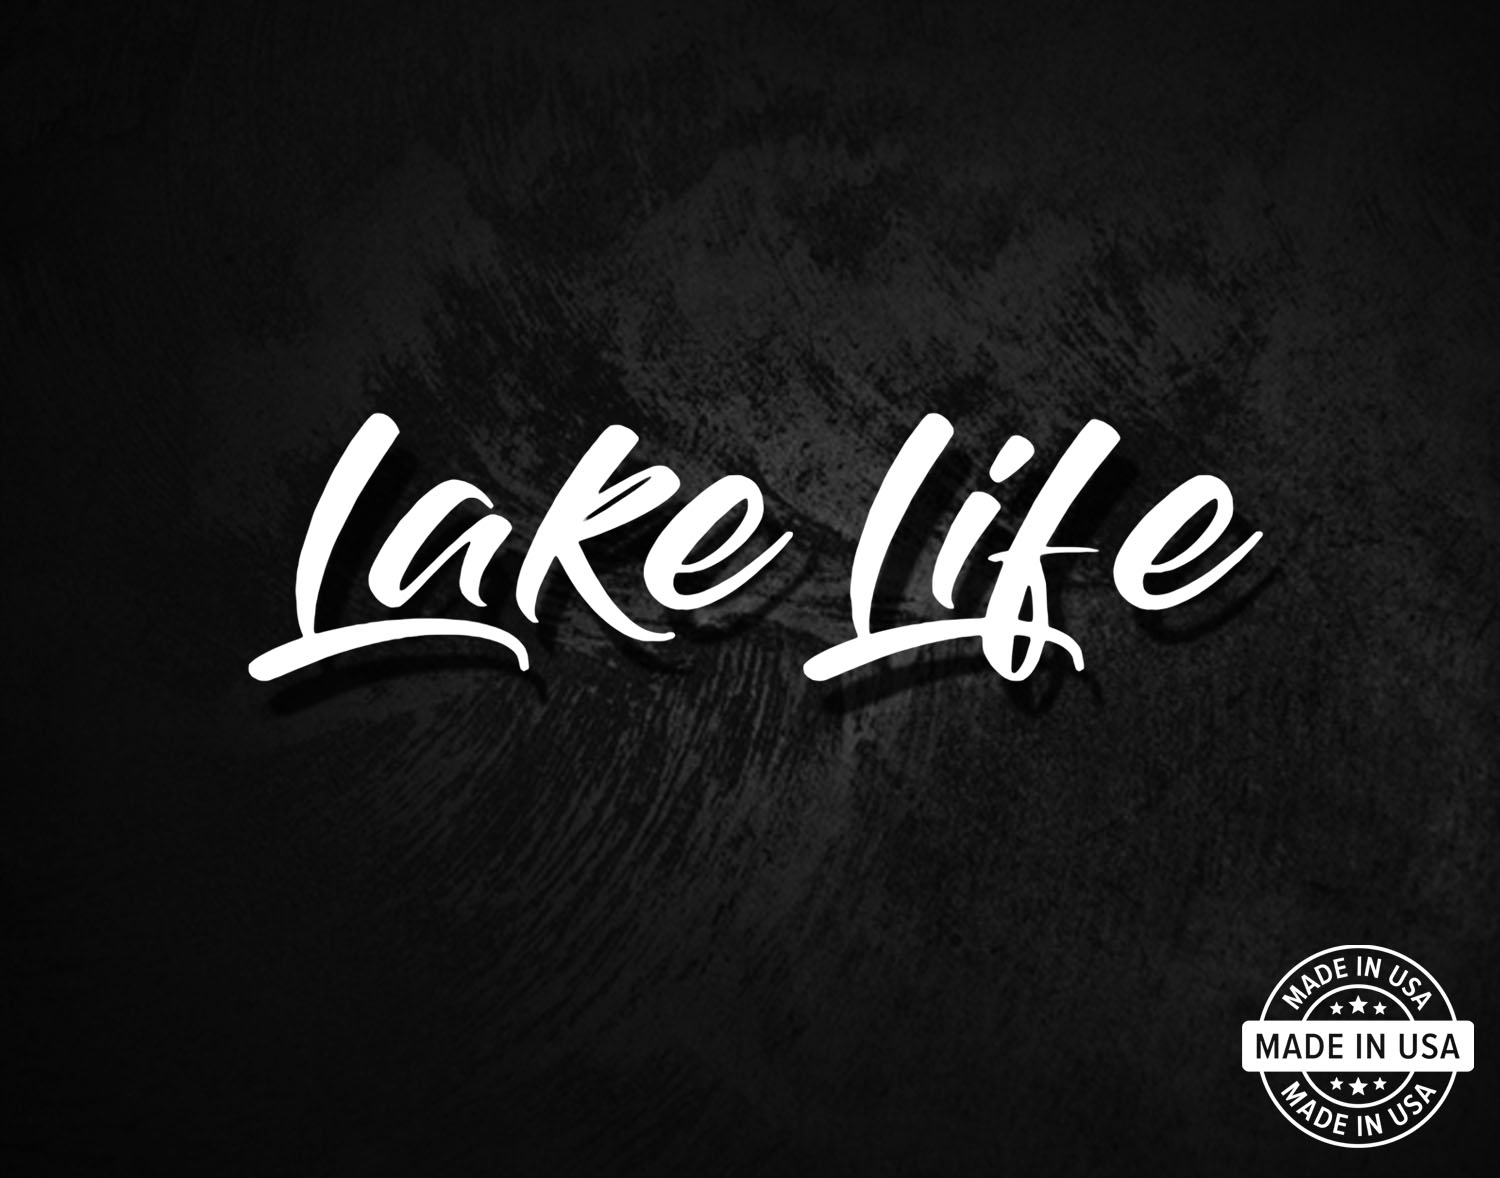 Lake Life Decal